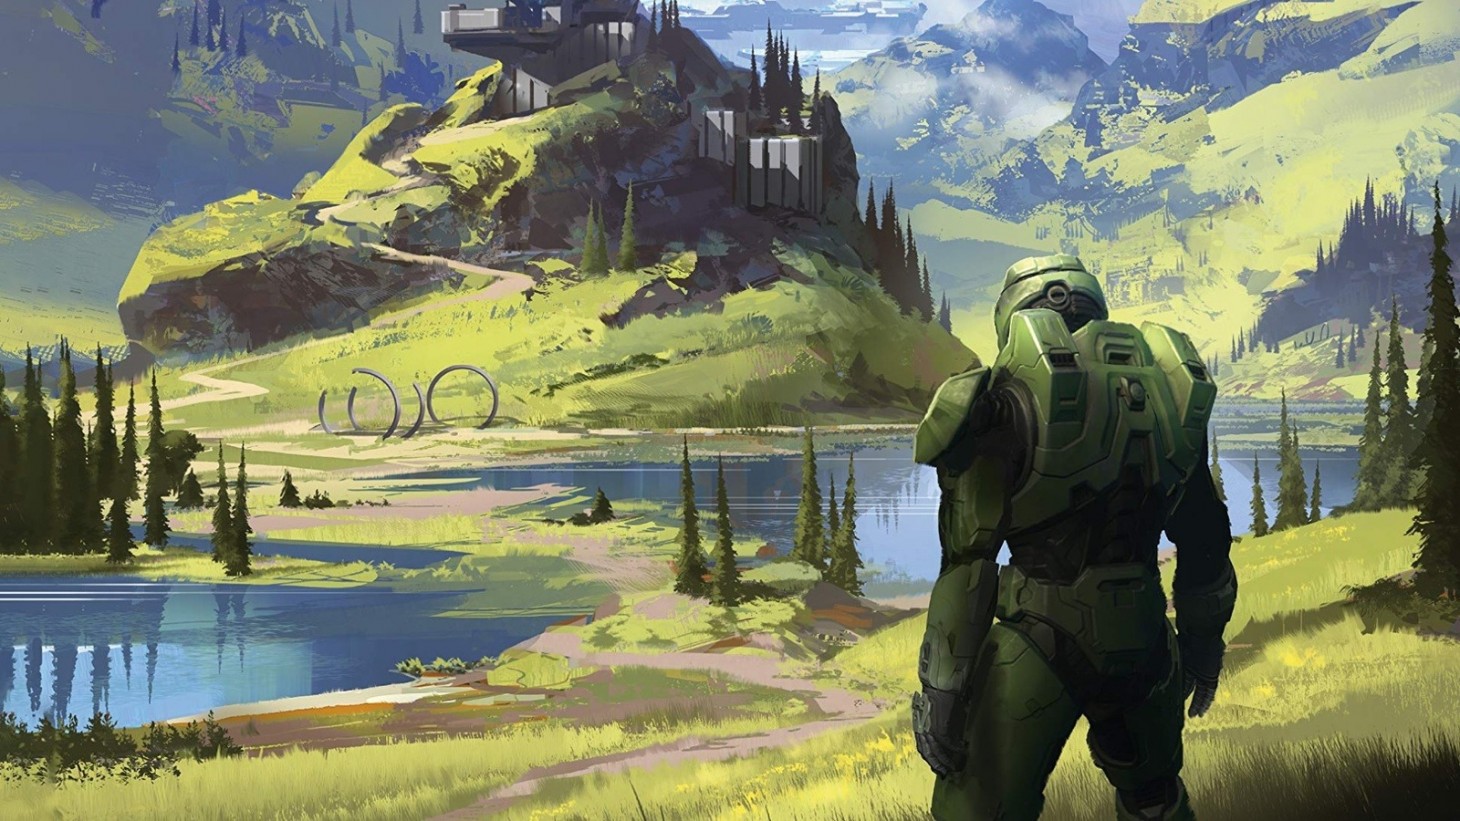 Thông tin chi tiết về bản Halo Infinite trên PC được tiết lộ trong đoạn trailer mới